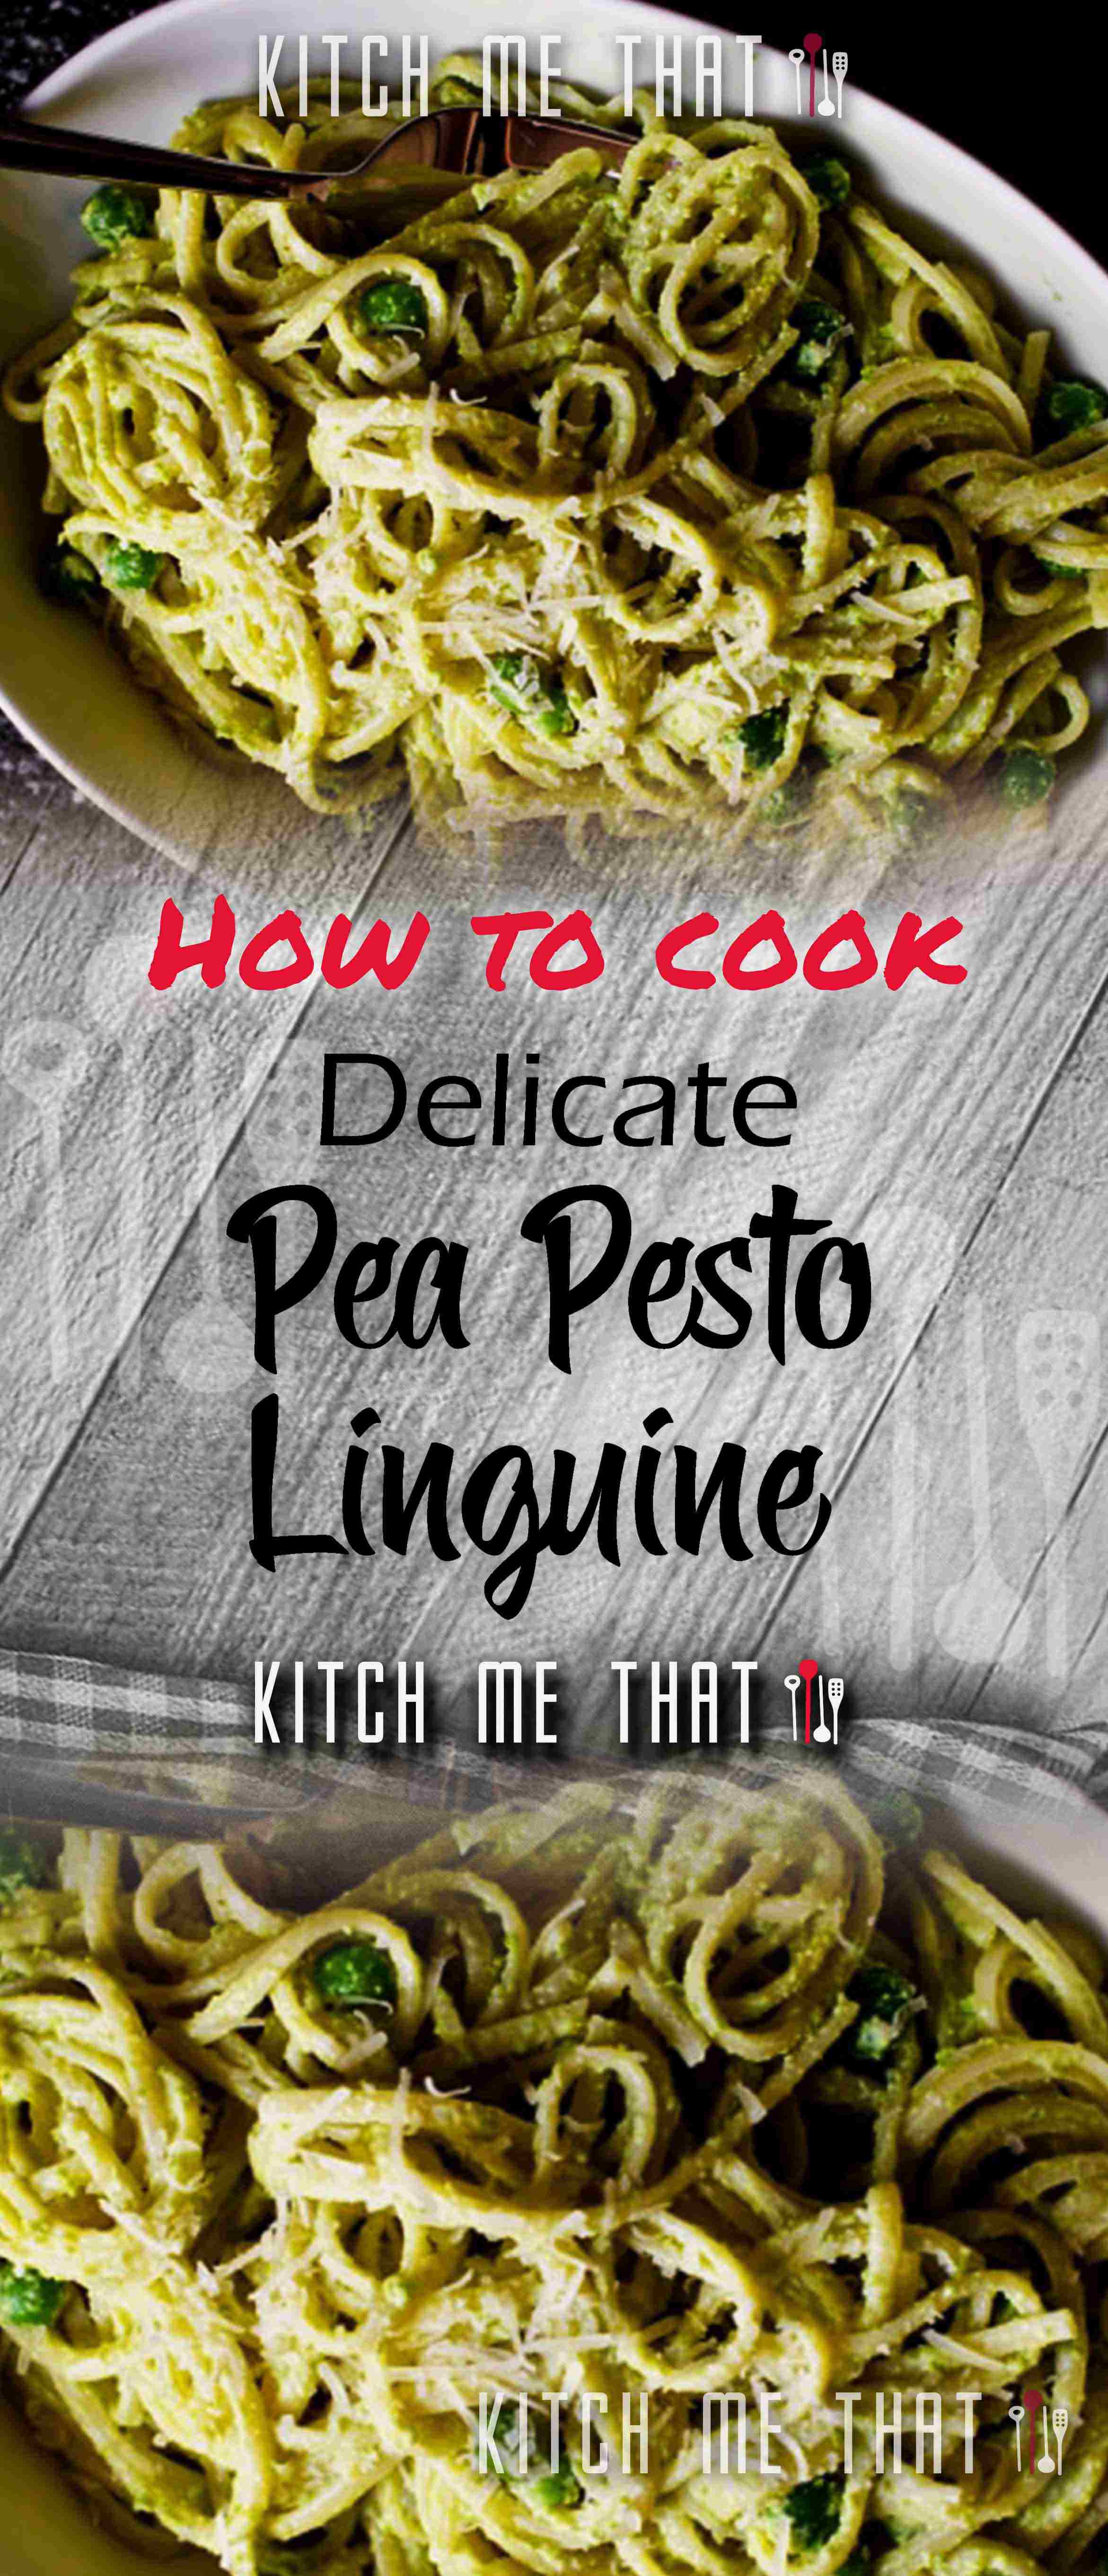 Pea Pesto Linguine